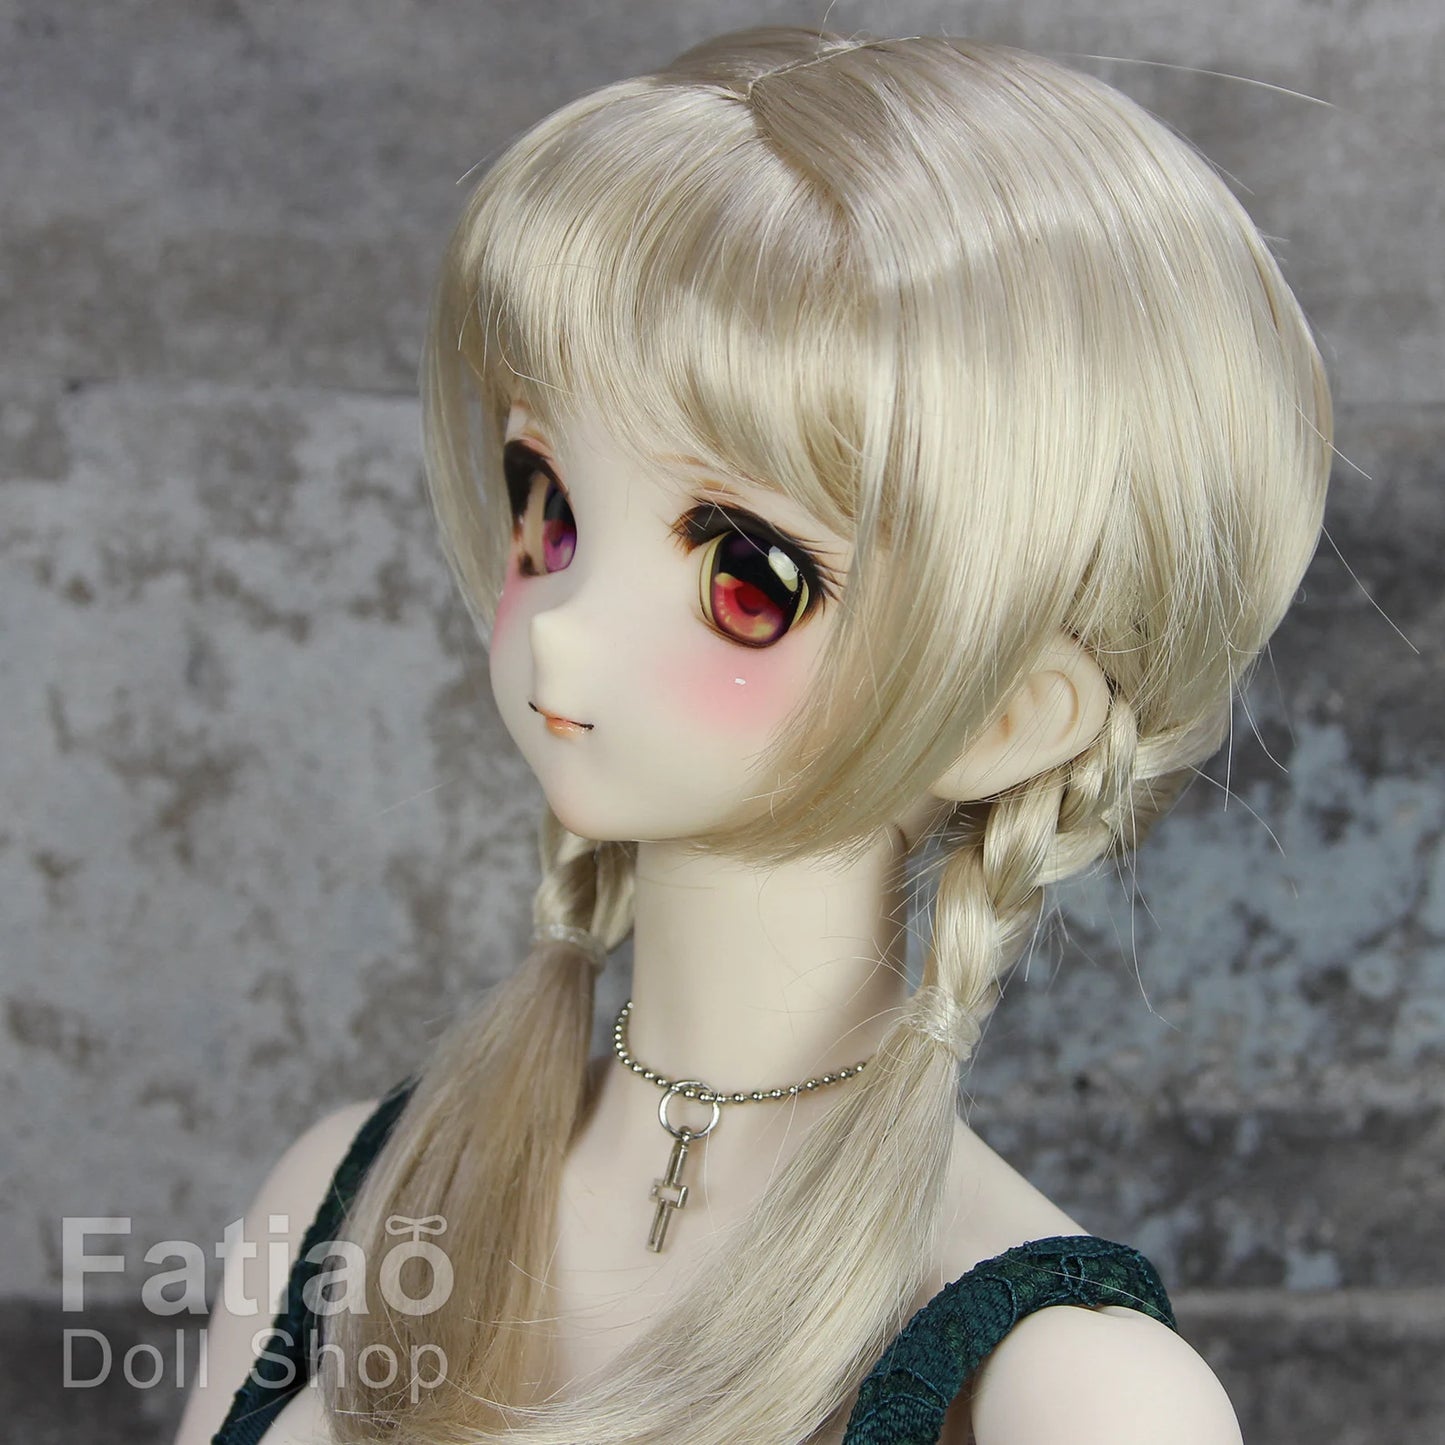 【Fatiao Doll Shop】FWF-685 娃用假髮 多色 / 8-9吋 BJD DD 3分 MDD